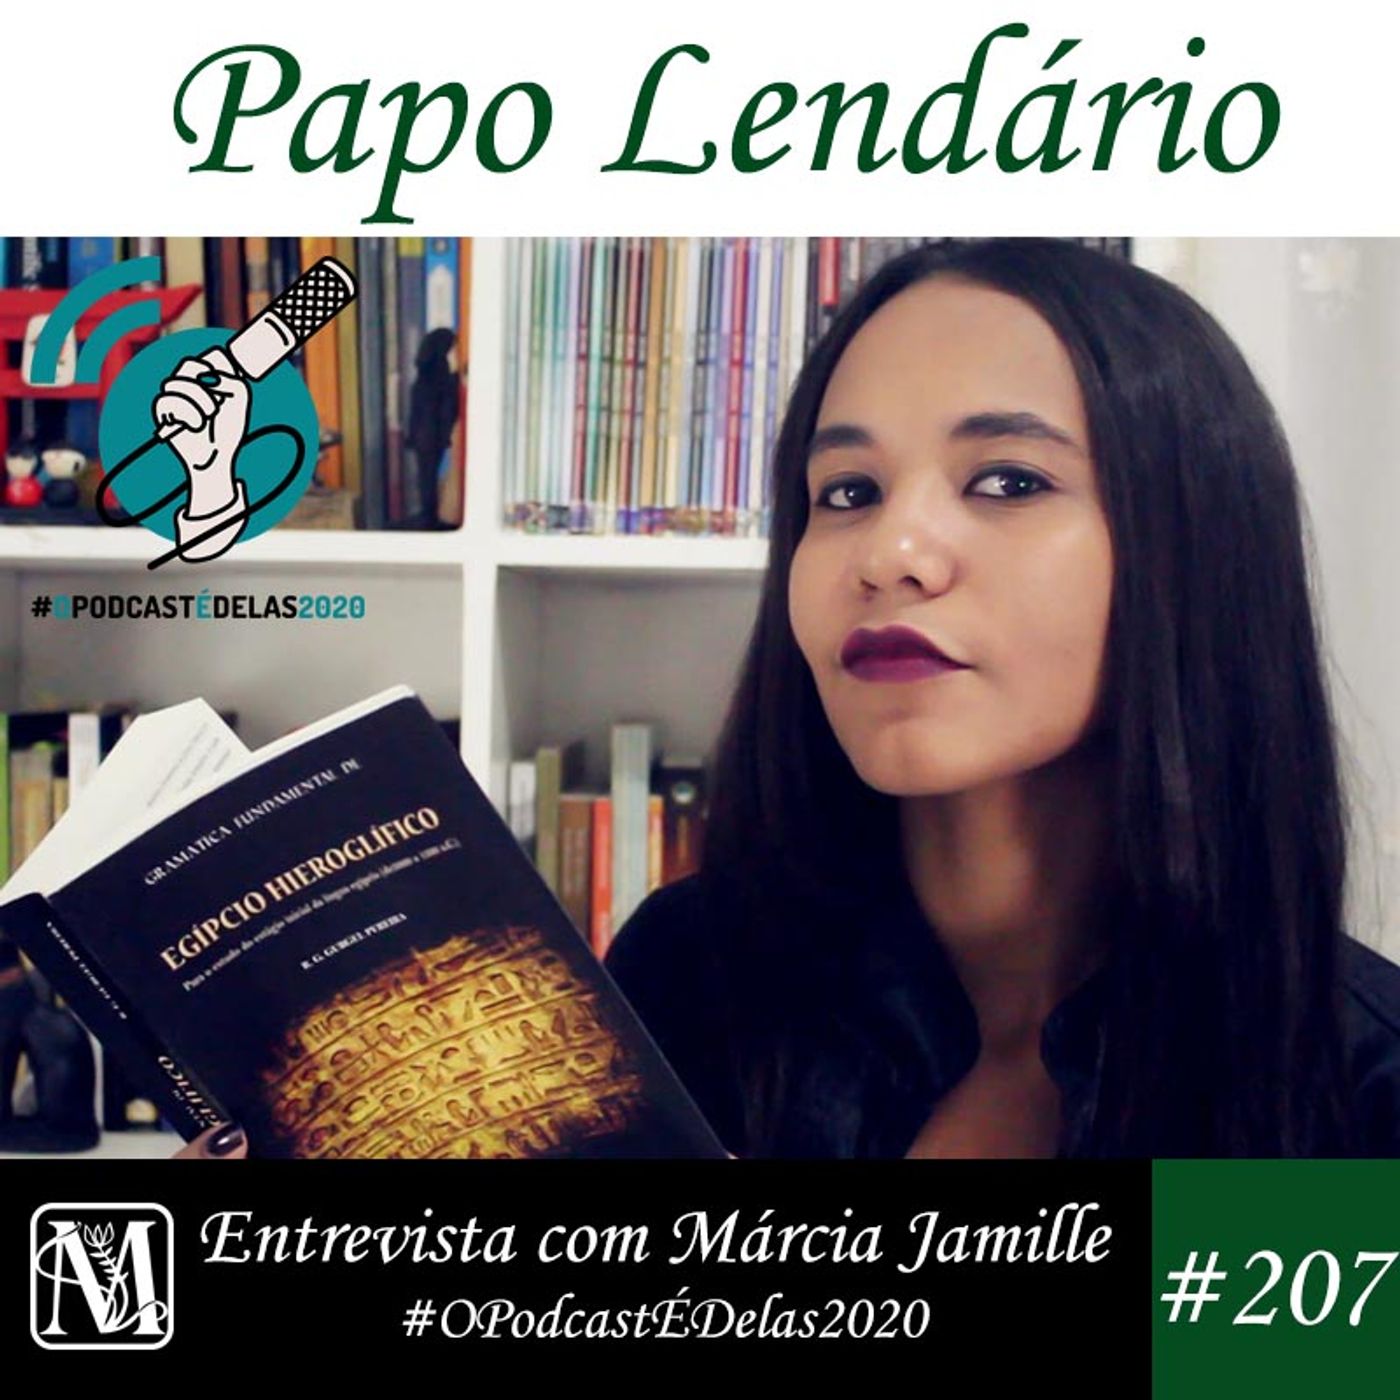 Papo Lendário #207 – Entrevista com Márcia Jamille – #OPodcastÉDelas2020